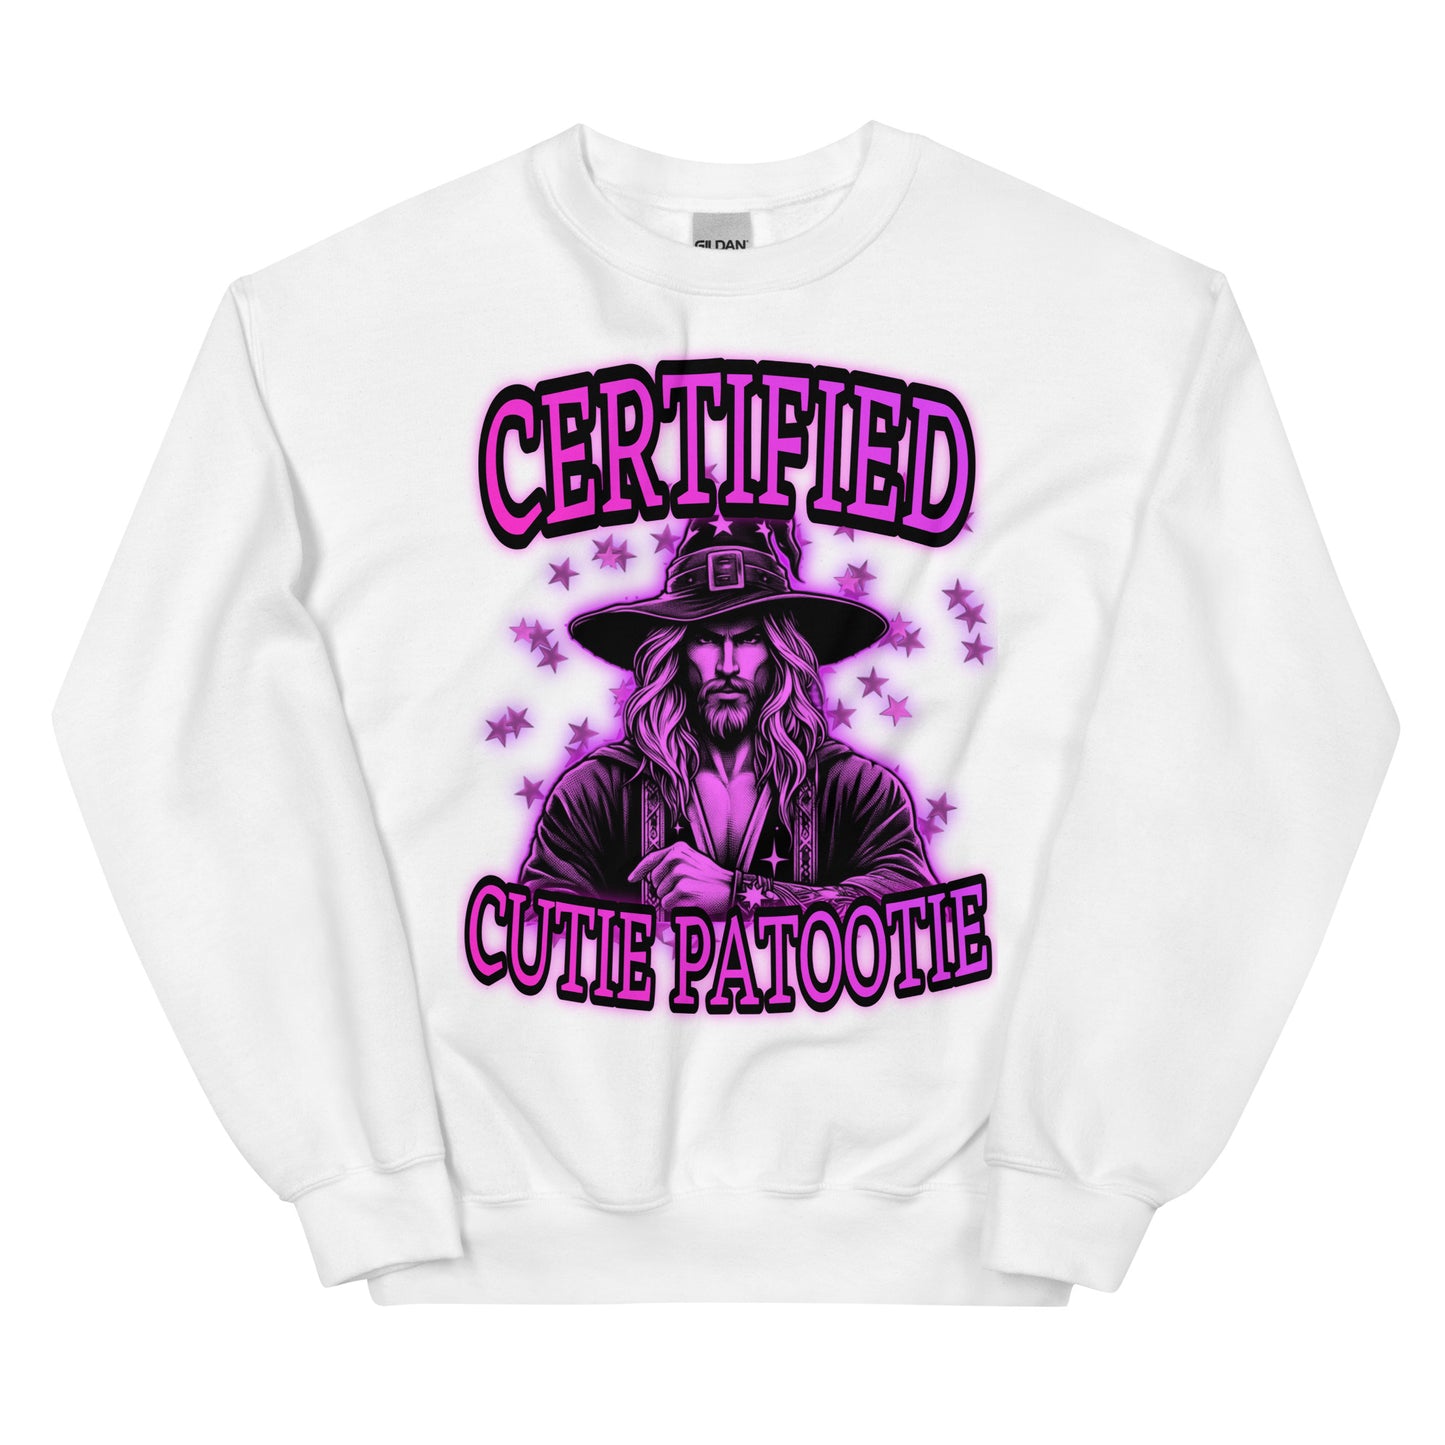 Certified cutie patootie (sweatshirt)